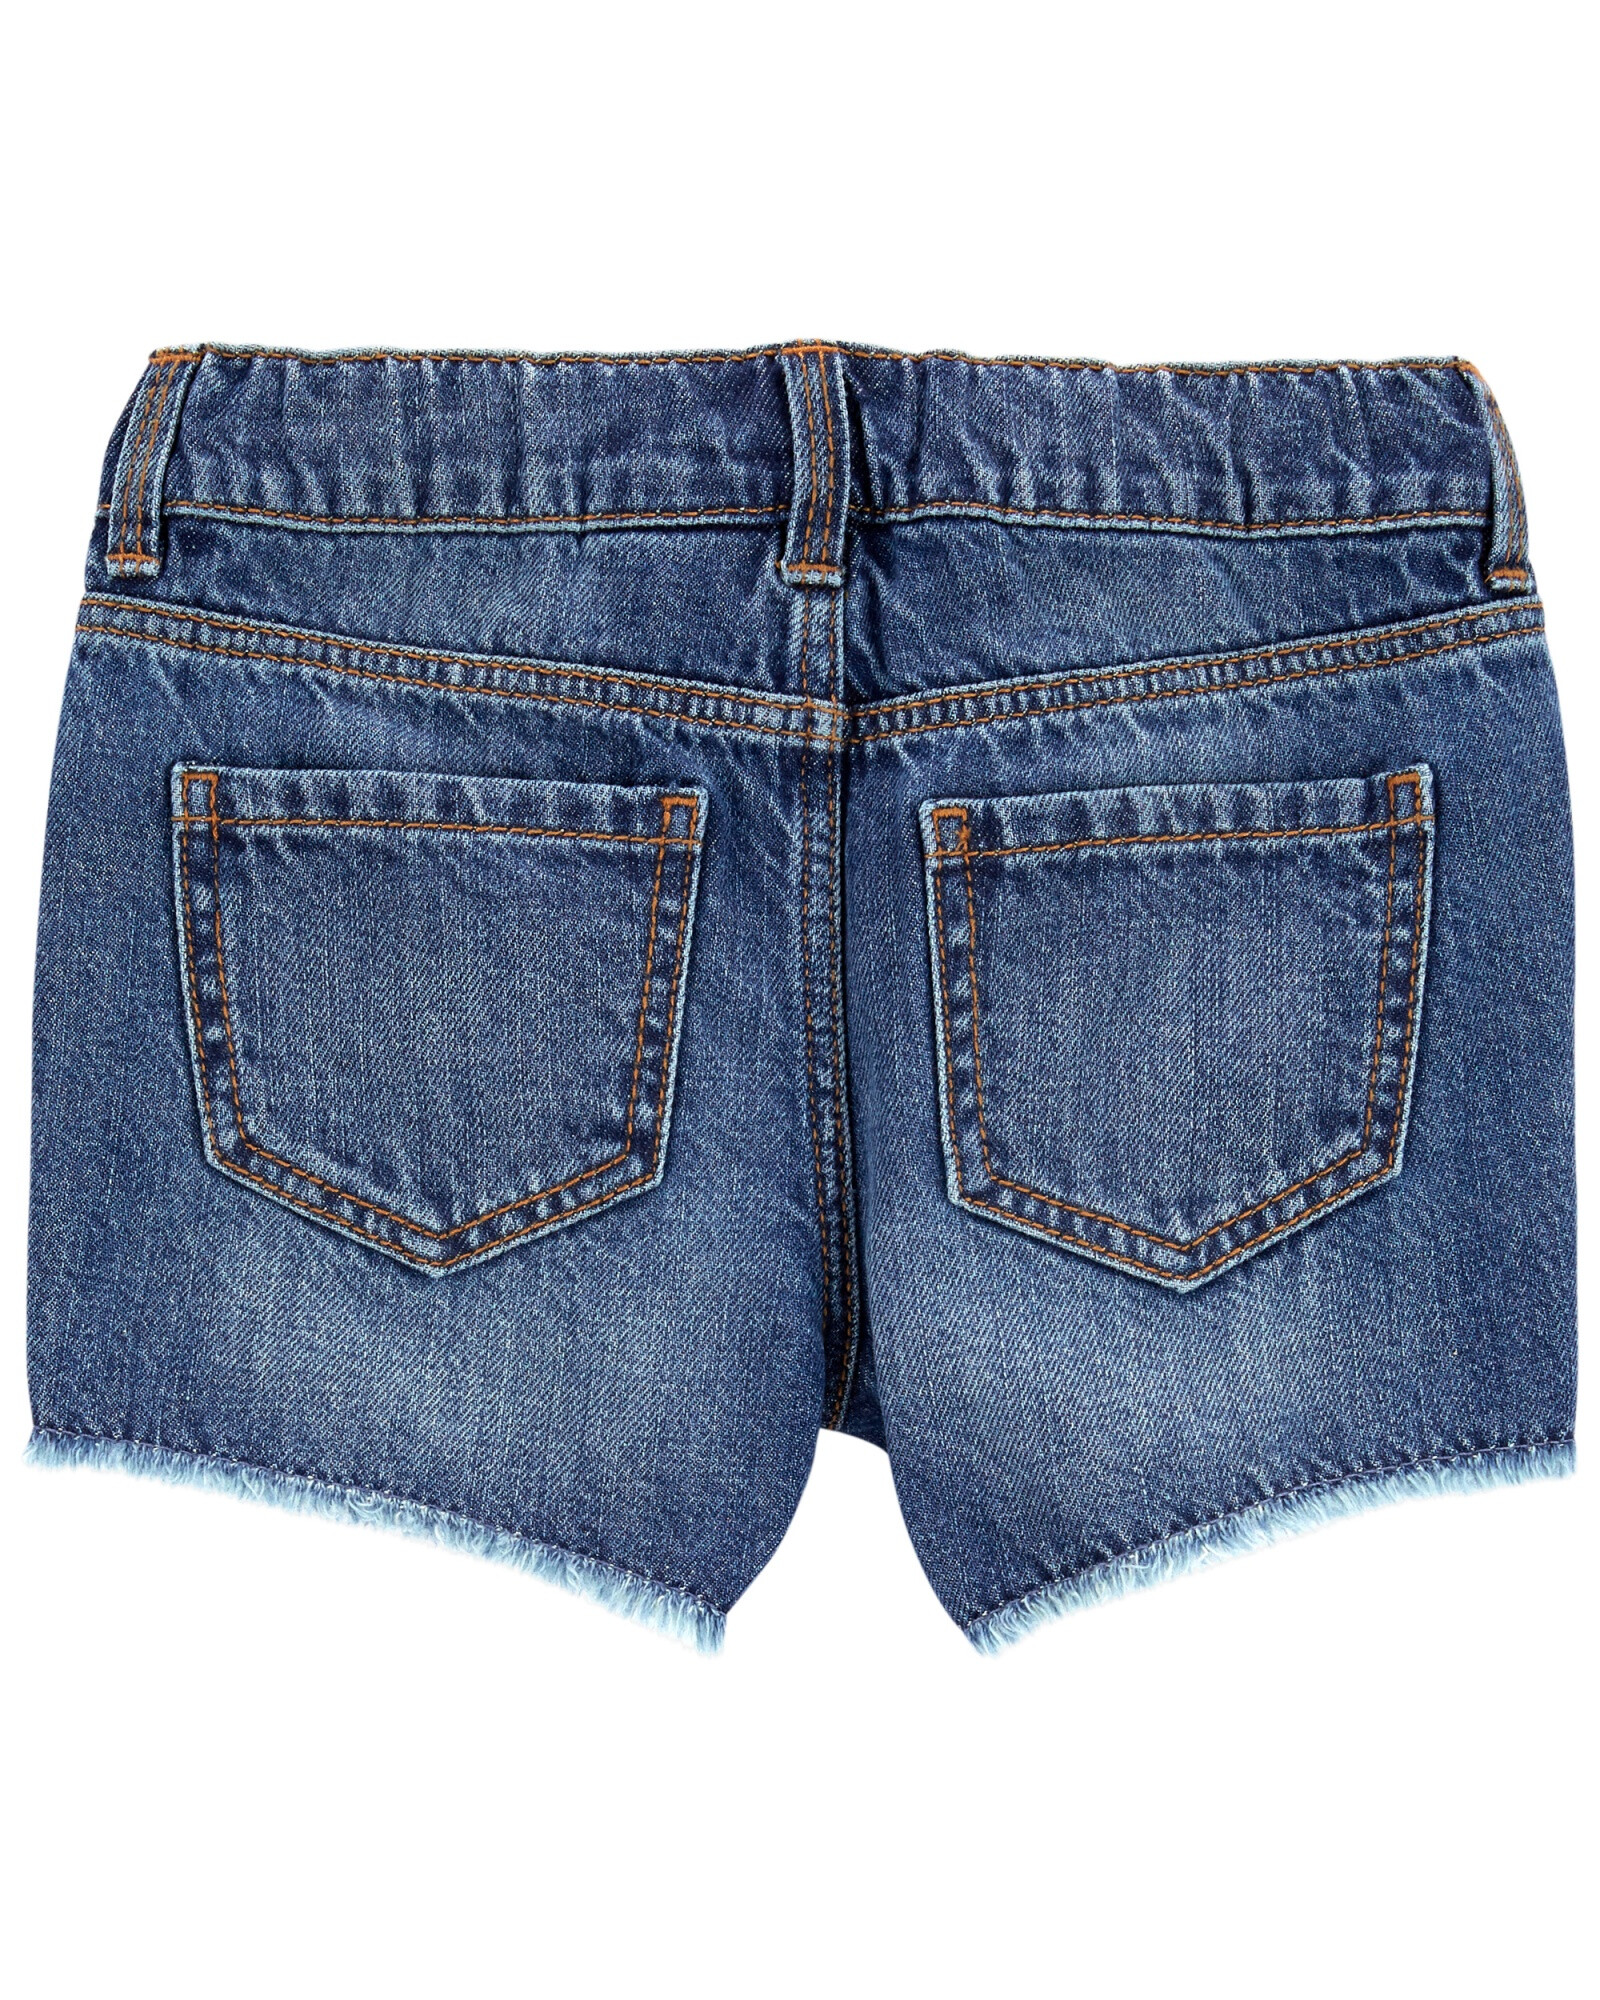 Short de jean con bordado. Talles 2-5T Sin color